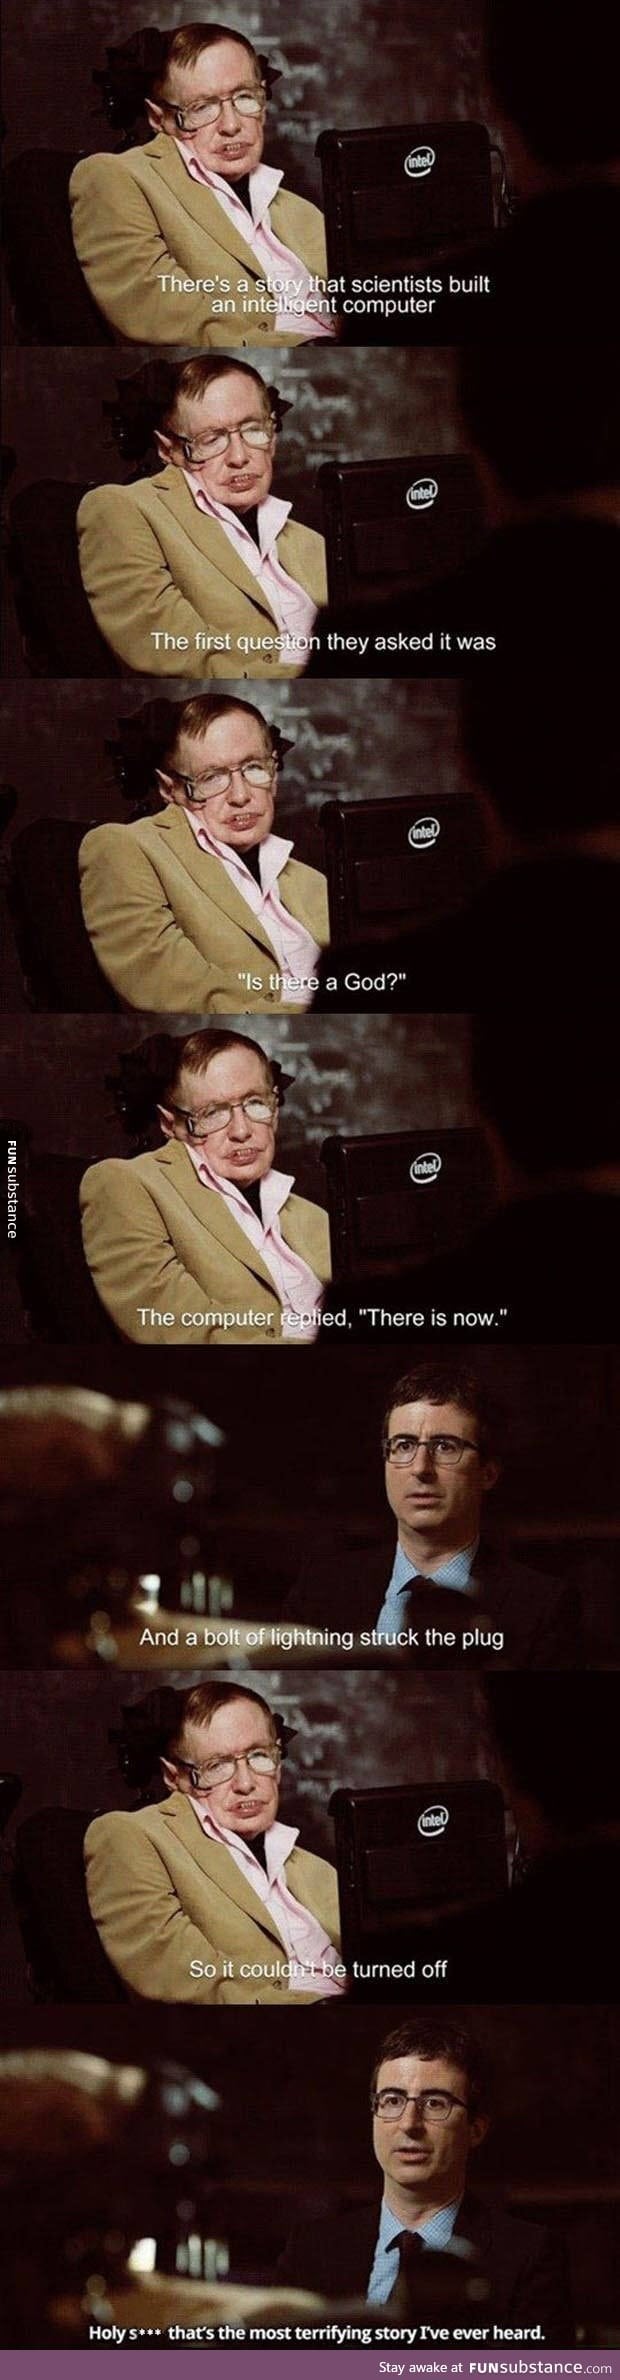 Stephen Hawking's interview